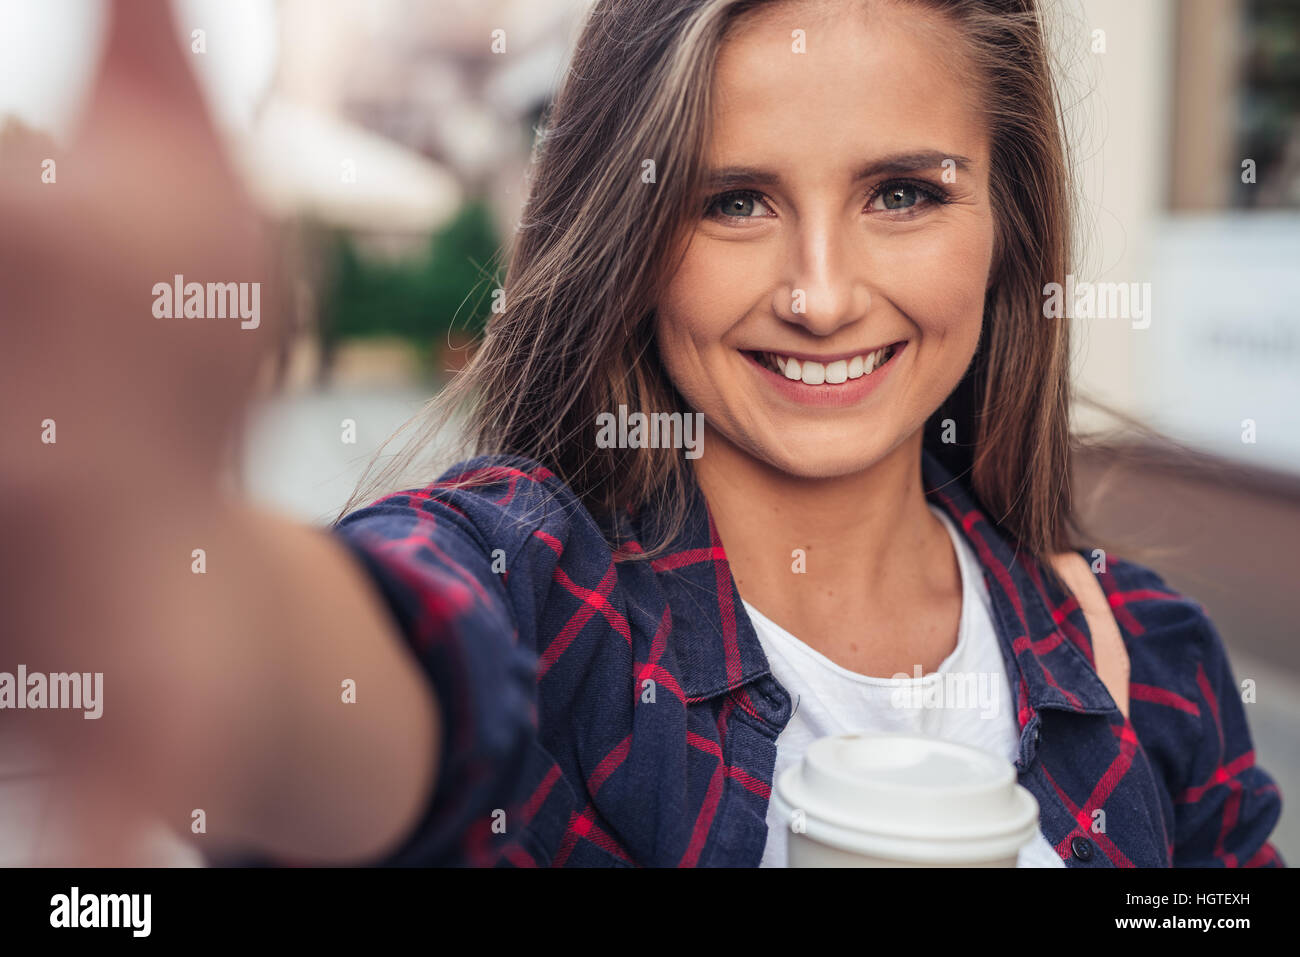 Atractiva mujer joven tomando un selfie en la ciudad Foto de stock